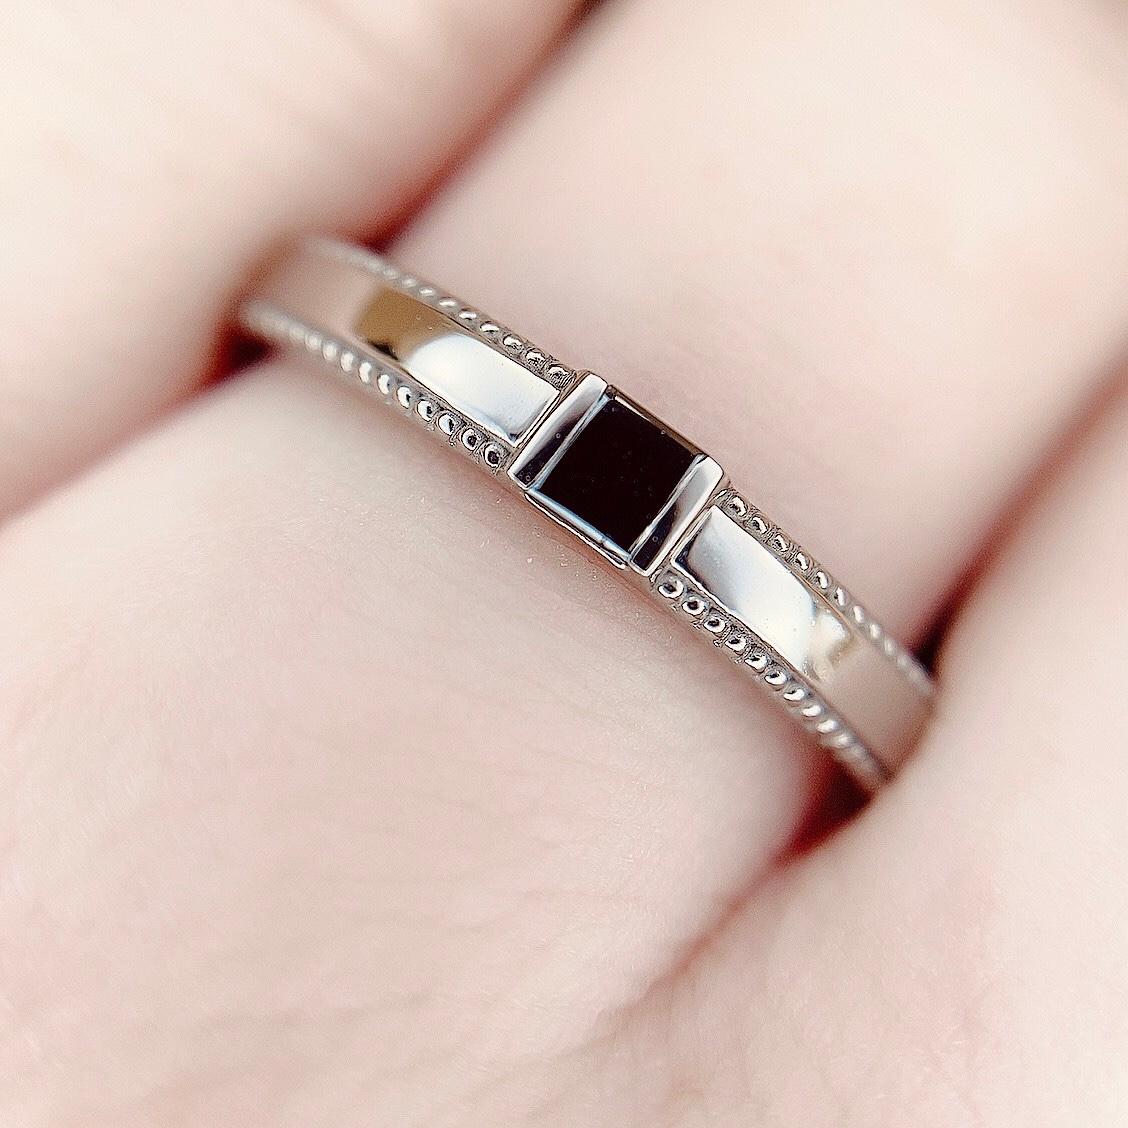 中央のブラックダイヤモンドの輝きが主張されたMen'sの結婚指輪です。人と被りたくない方におすすめの結婚指輪です。